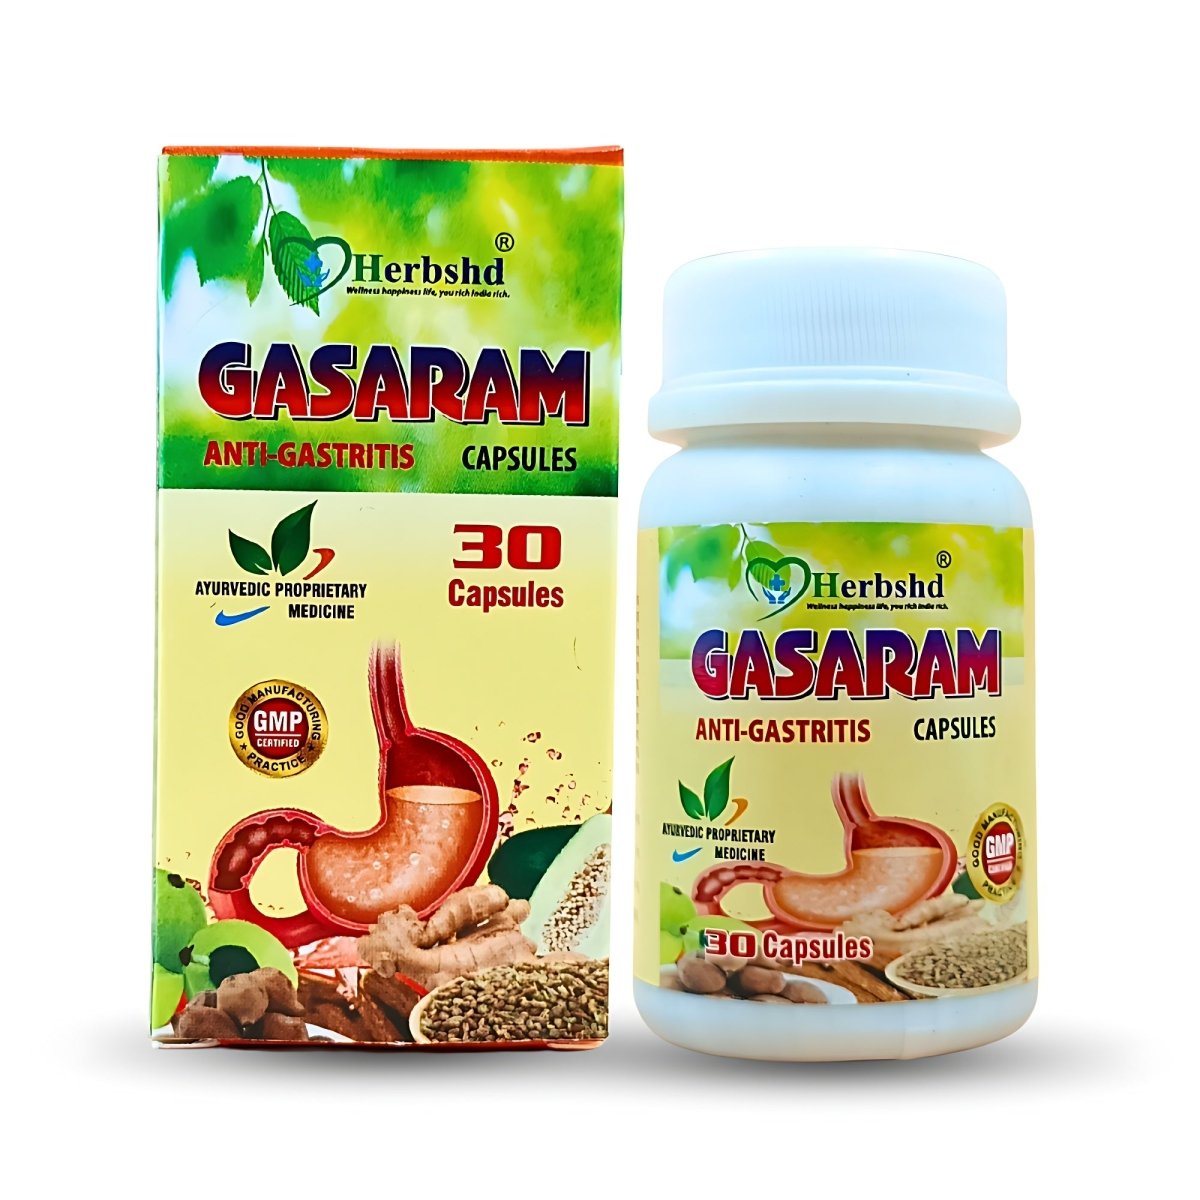 Herbshd Gasaram Anti-Gastritis Capsule